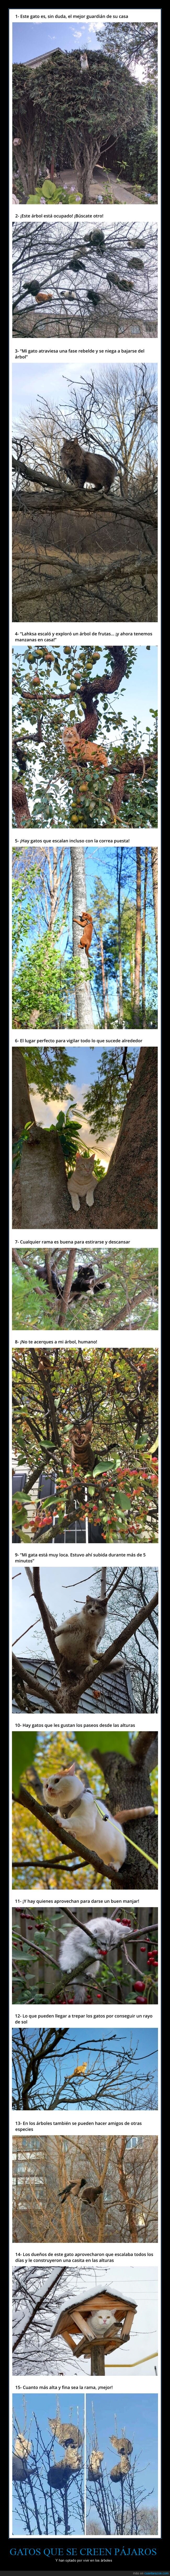 gatos,pájaros,árboles